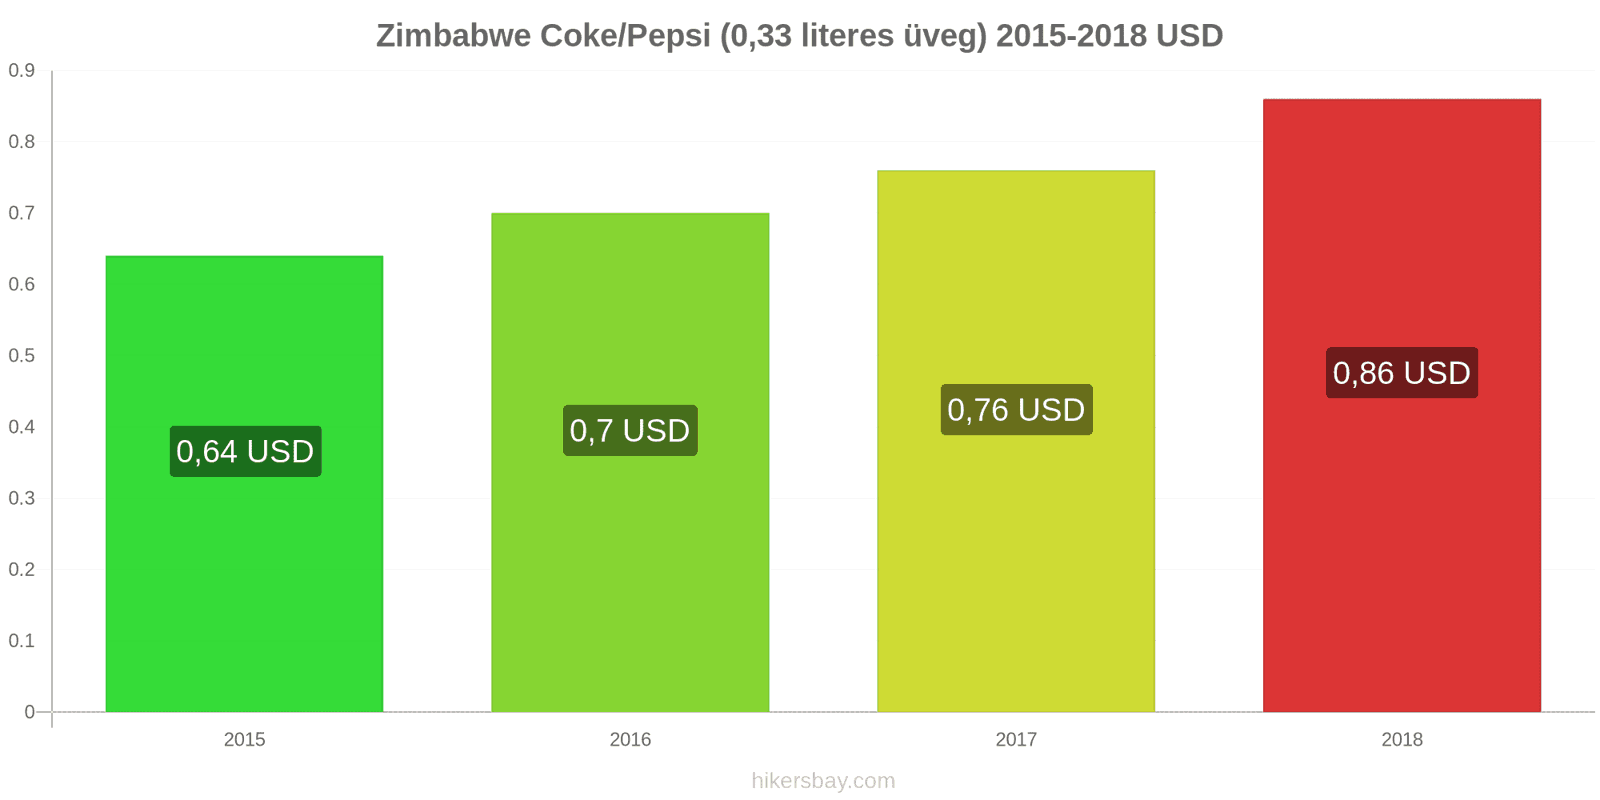 Zimbabwe ár változások Coca-Cola/Pepsi (0.33 literes üveg) hikersbay.com